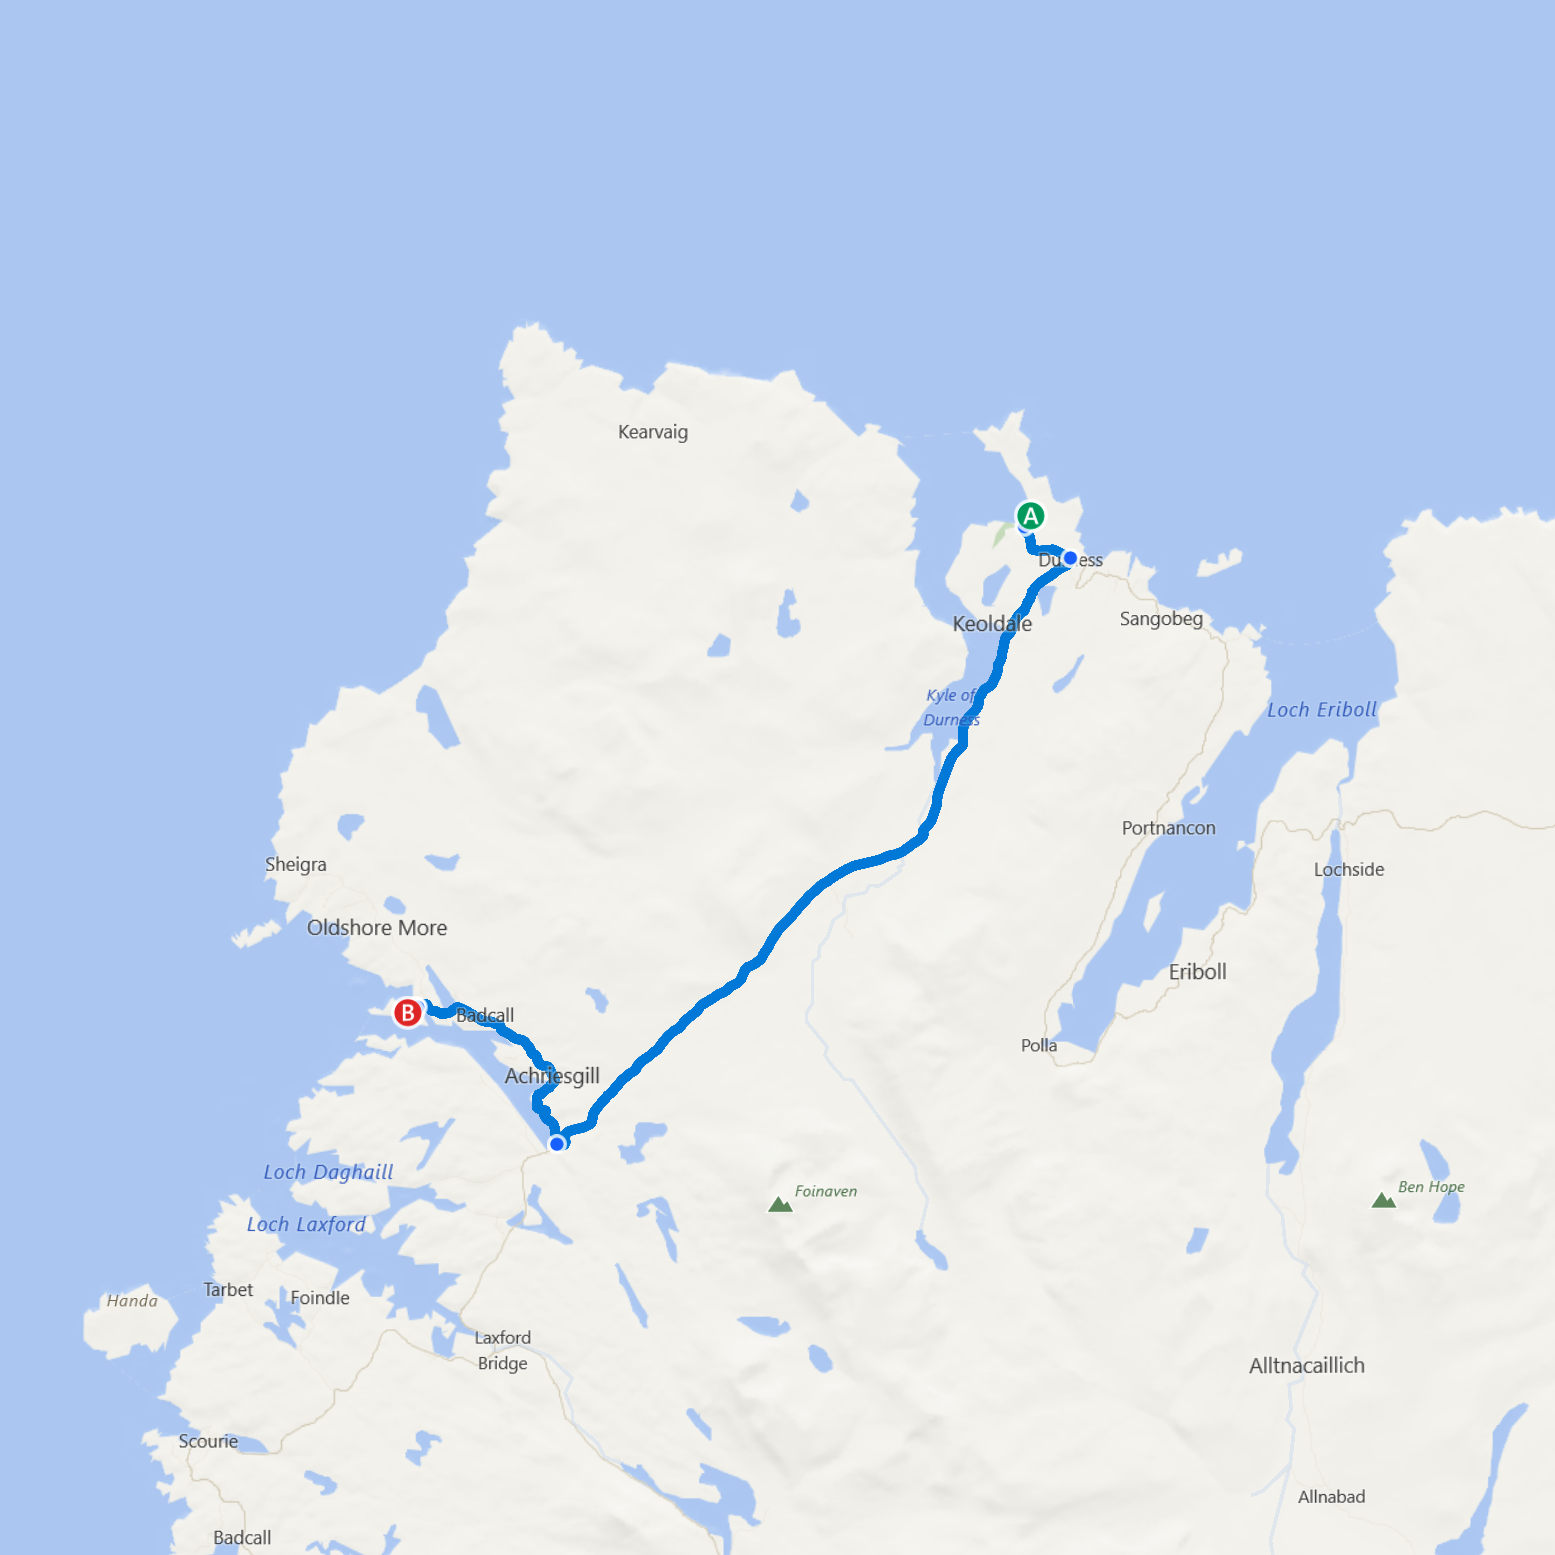 From Balnakeil Bay to Kinlochbervie, Northwest Highlands of Scotland